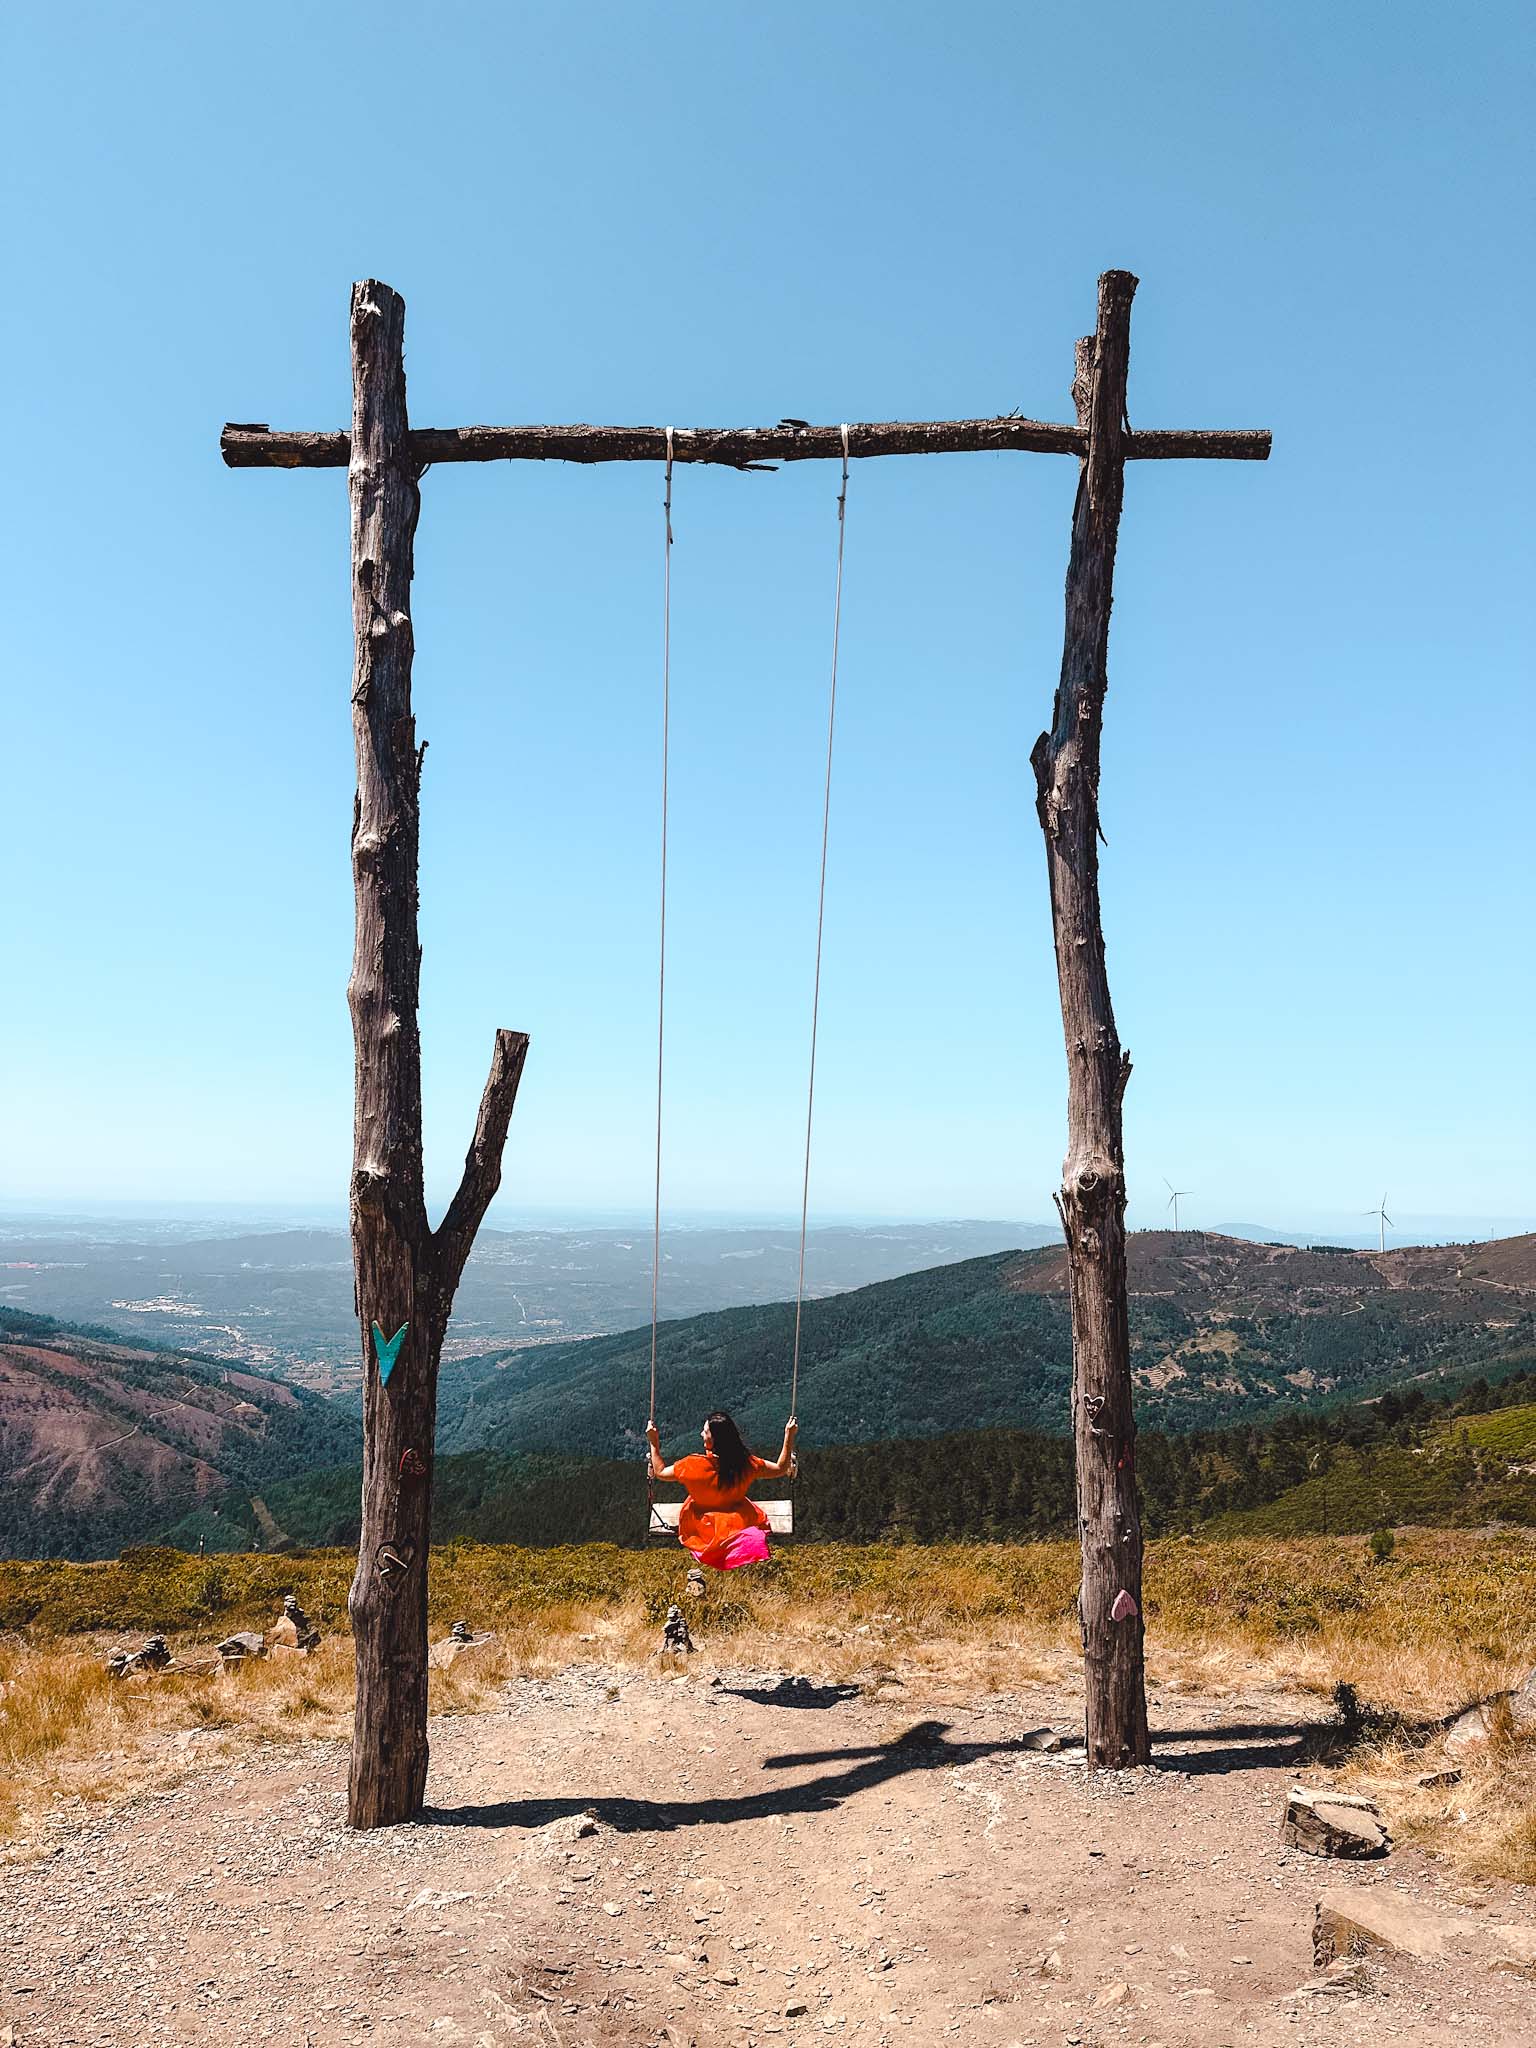 Swings in Portugal - Baloiço do Trevim